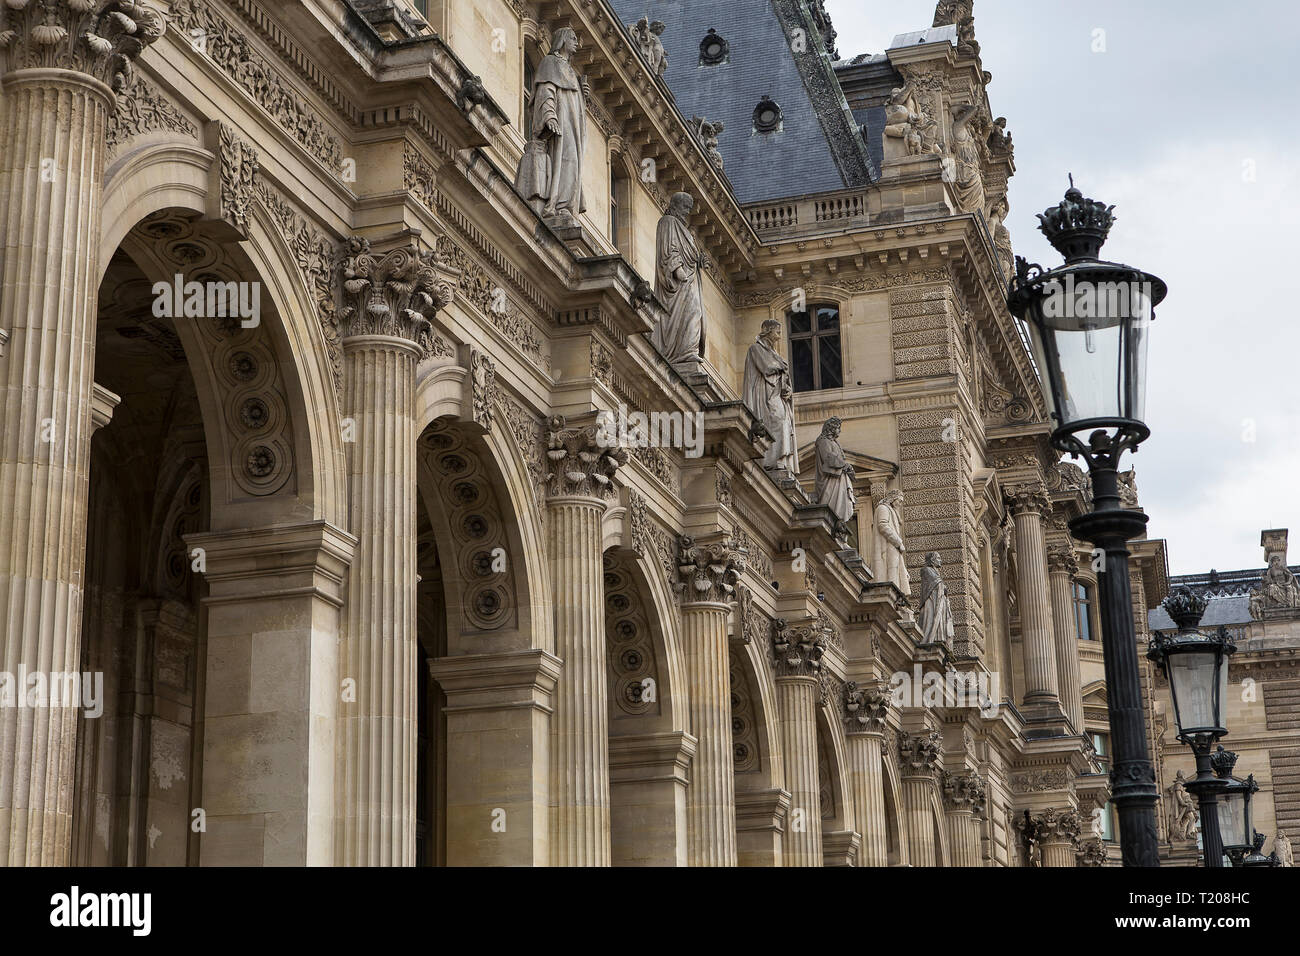 PARIS, FRANCE, APRIL 13, 2017 : architectural exteriors details of the Louvre museum, april 13, 2017, in Paris, France Stock Photo